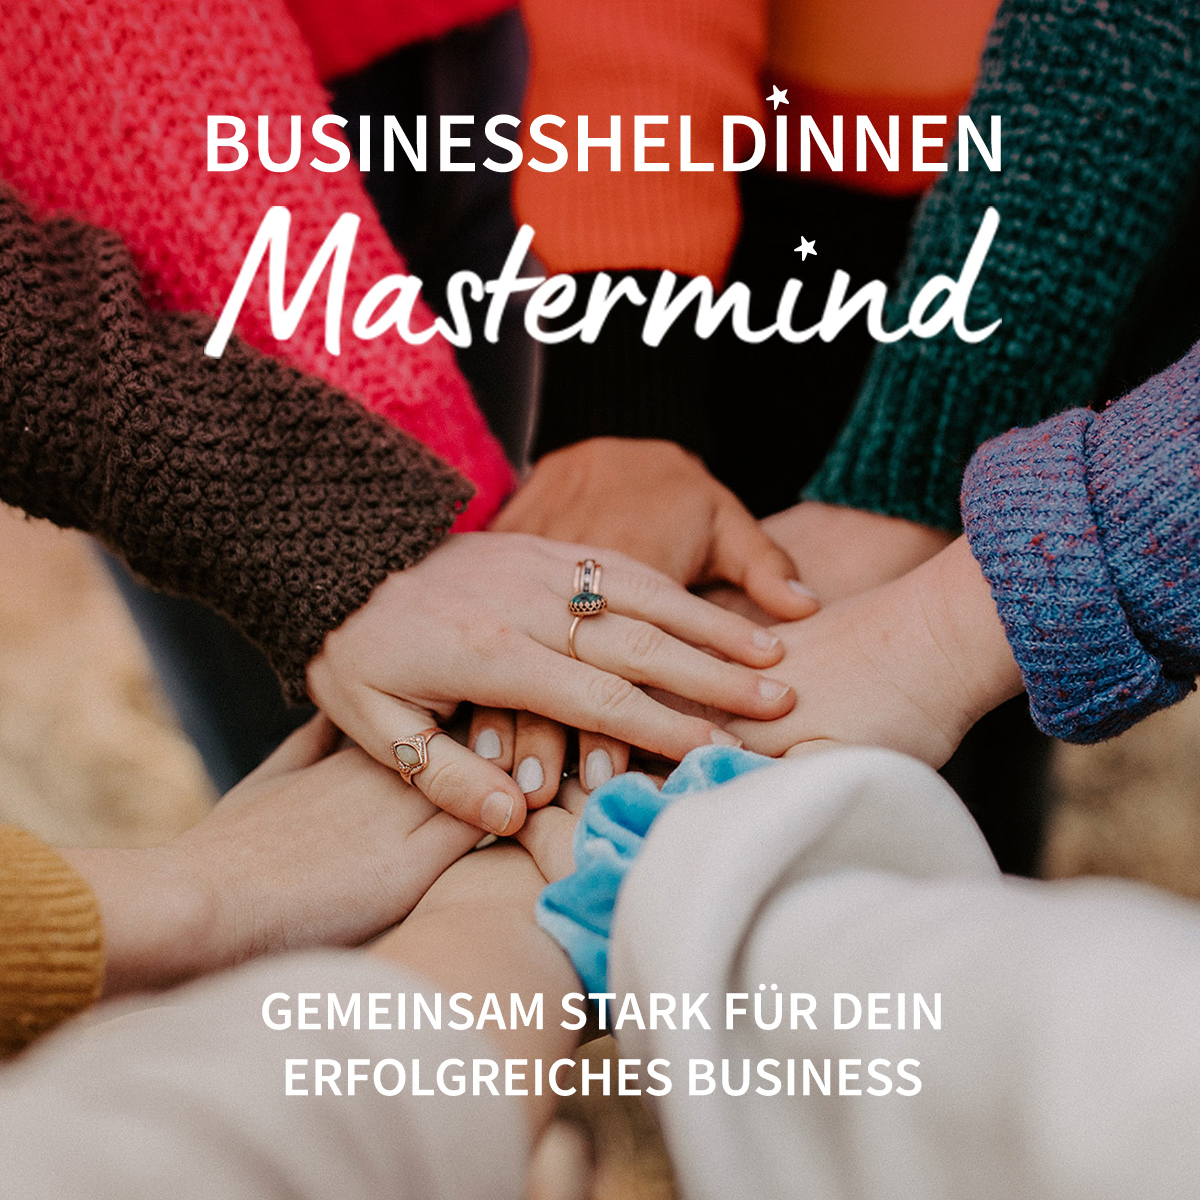 Businessheldinnen-Mastermind: Gemeinsam stark für dein erfolgreiches Business